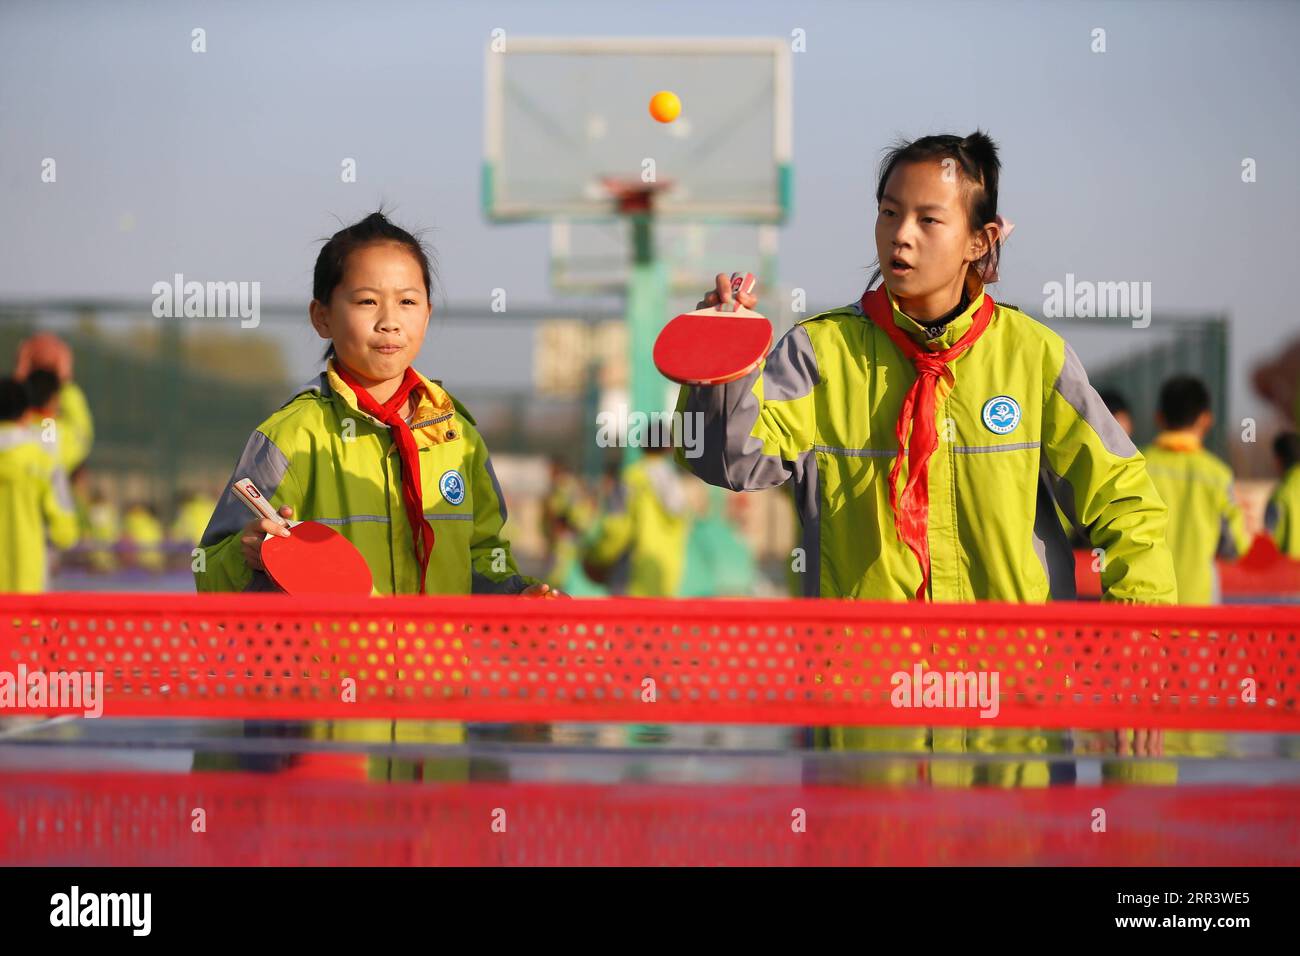 201112 -- QINGDAO, 12 novembre 2020 -- gli studenti giocano a ping-pong durante una pausa di classe alla scuola elementare Dong gaobu di Qingdao, provincia dello Shandong, Cina orientale, 12 novembre 2020. Negli ultimi anni, la scuola ha svolto varie attività sportive durante le pause di classe più lunghe come modo per aiutare gli studenti a rilassarsi e migliorare le loro condizioni fisiche. Foto di /Xinhua CHINA-SHANDONG-QINGDAO-SCHOOL-CLASS BREAK CN LiangxXiaopeng PUBLICATIONxNOTxINxCHN Foto Stock